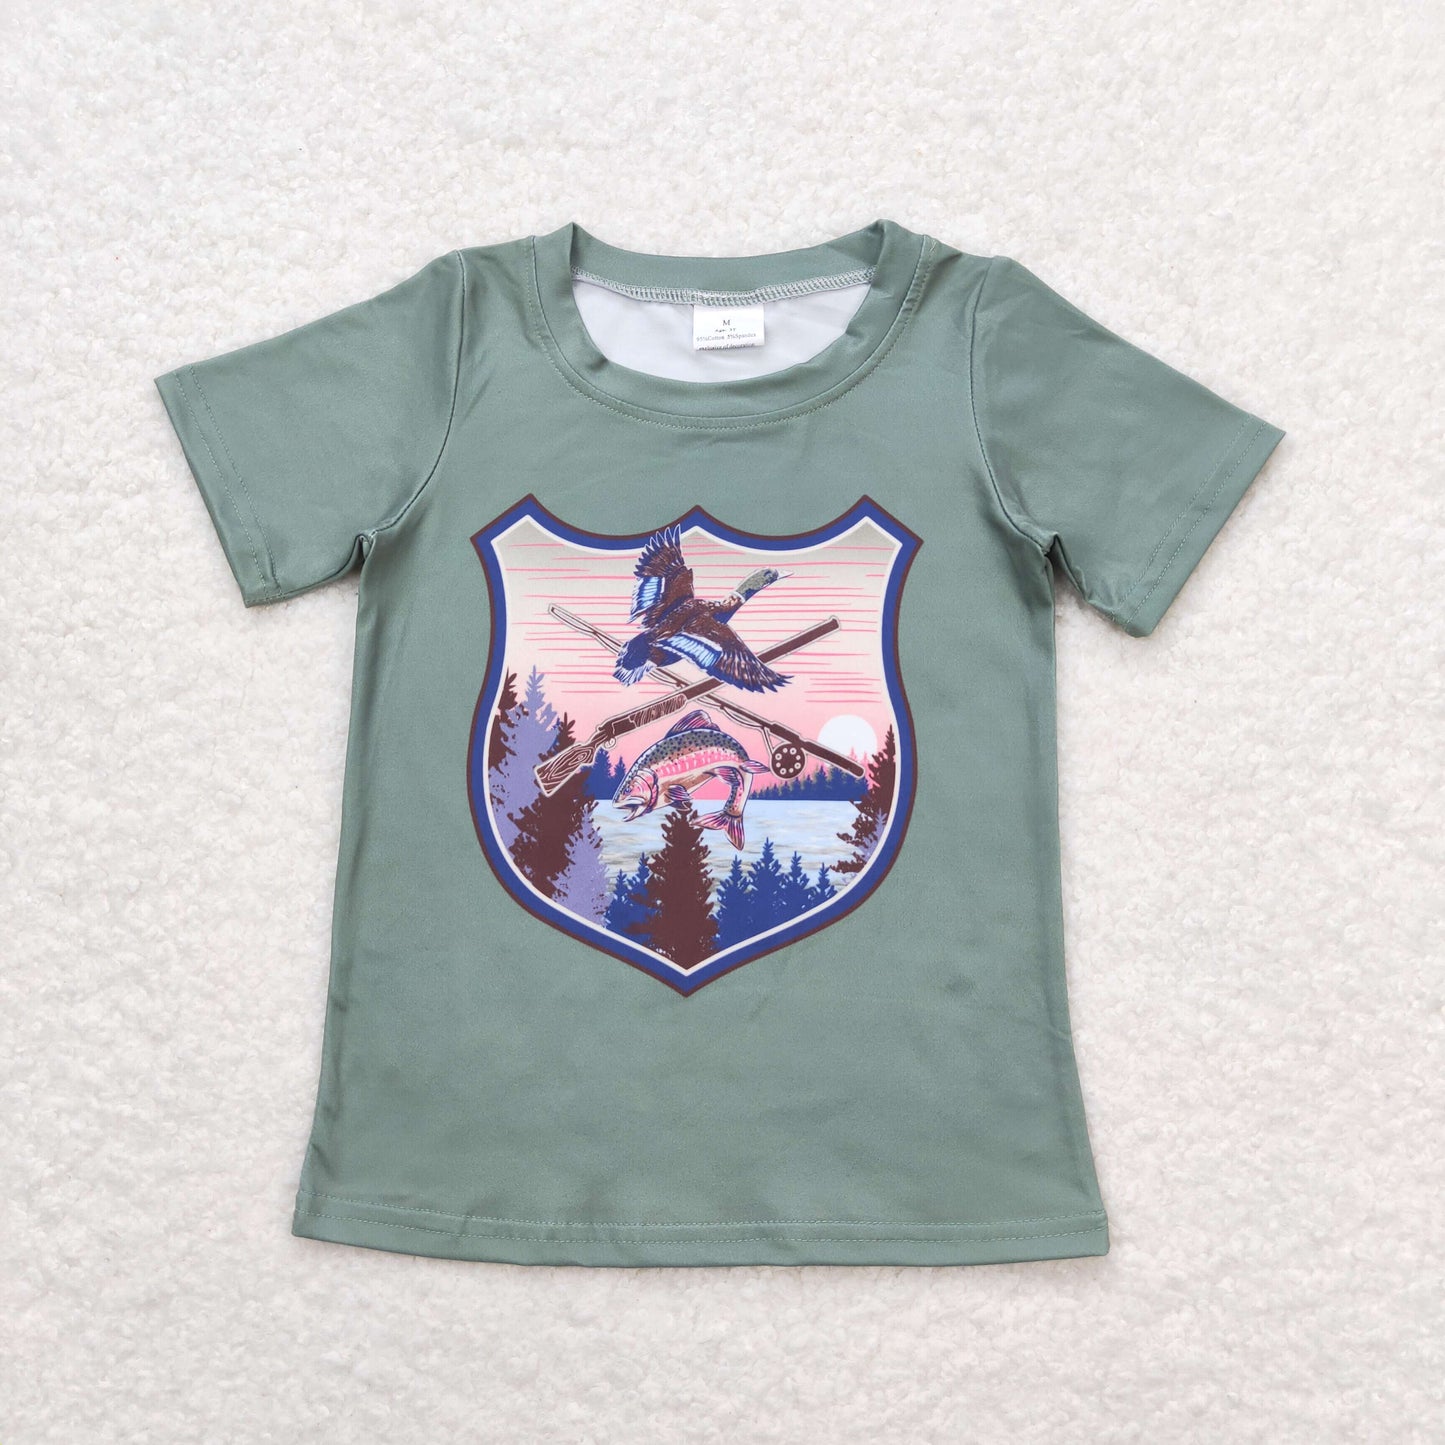 boy hunting tee summer t-shirt kids clothing